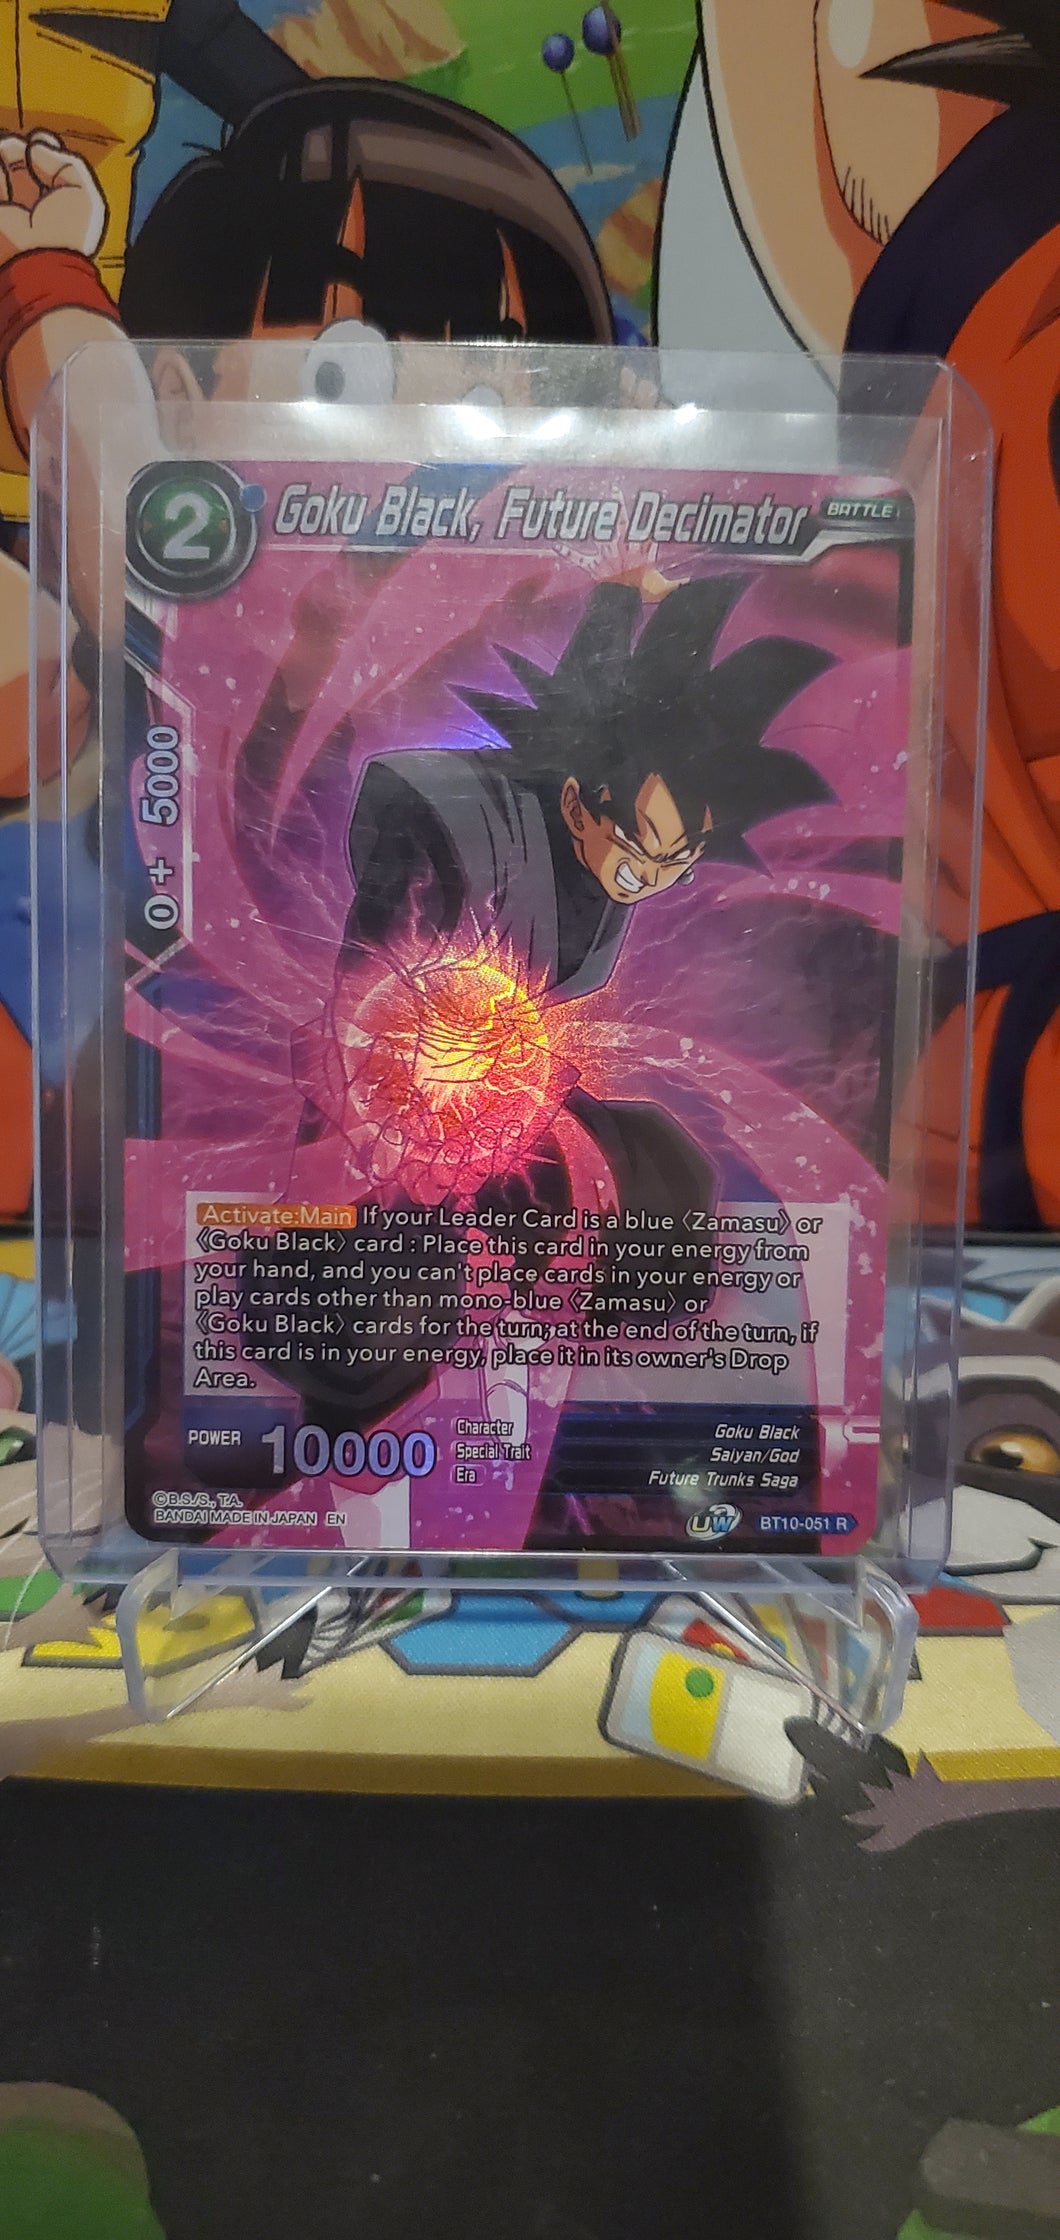 Goku Black, Future Decimator